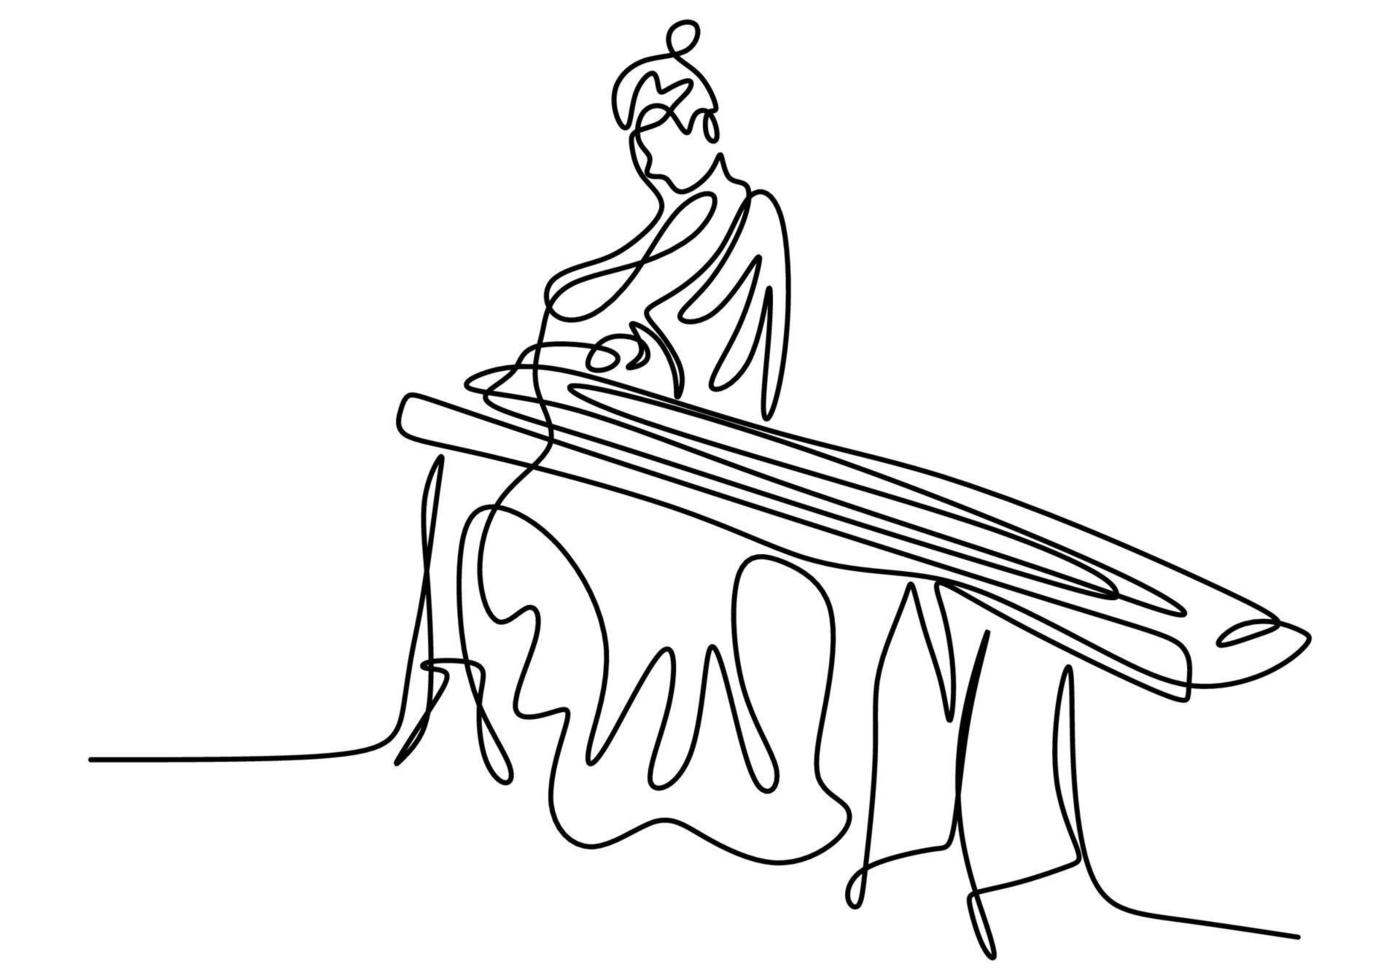 kontinuerlig linjeteckning av kvinna med koto, traditionell japansk musik. en vacker flicka som bär en kimono sitter medan han spelar ett traditionellt musikinstrument. vektor